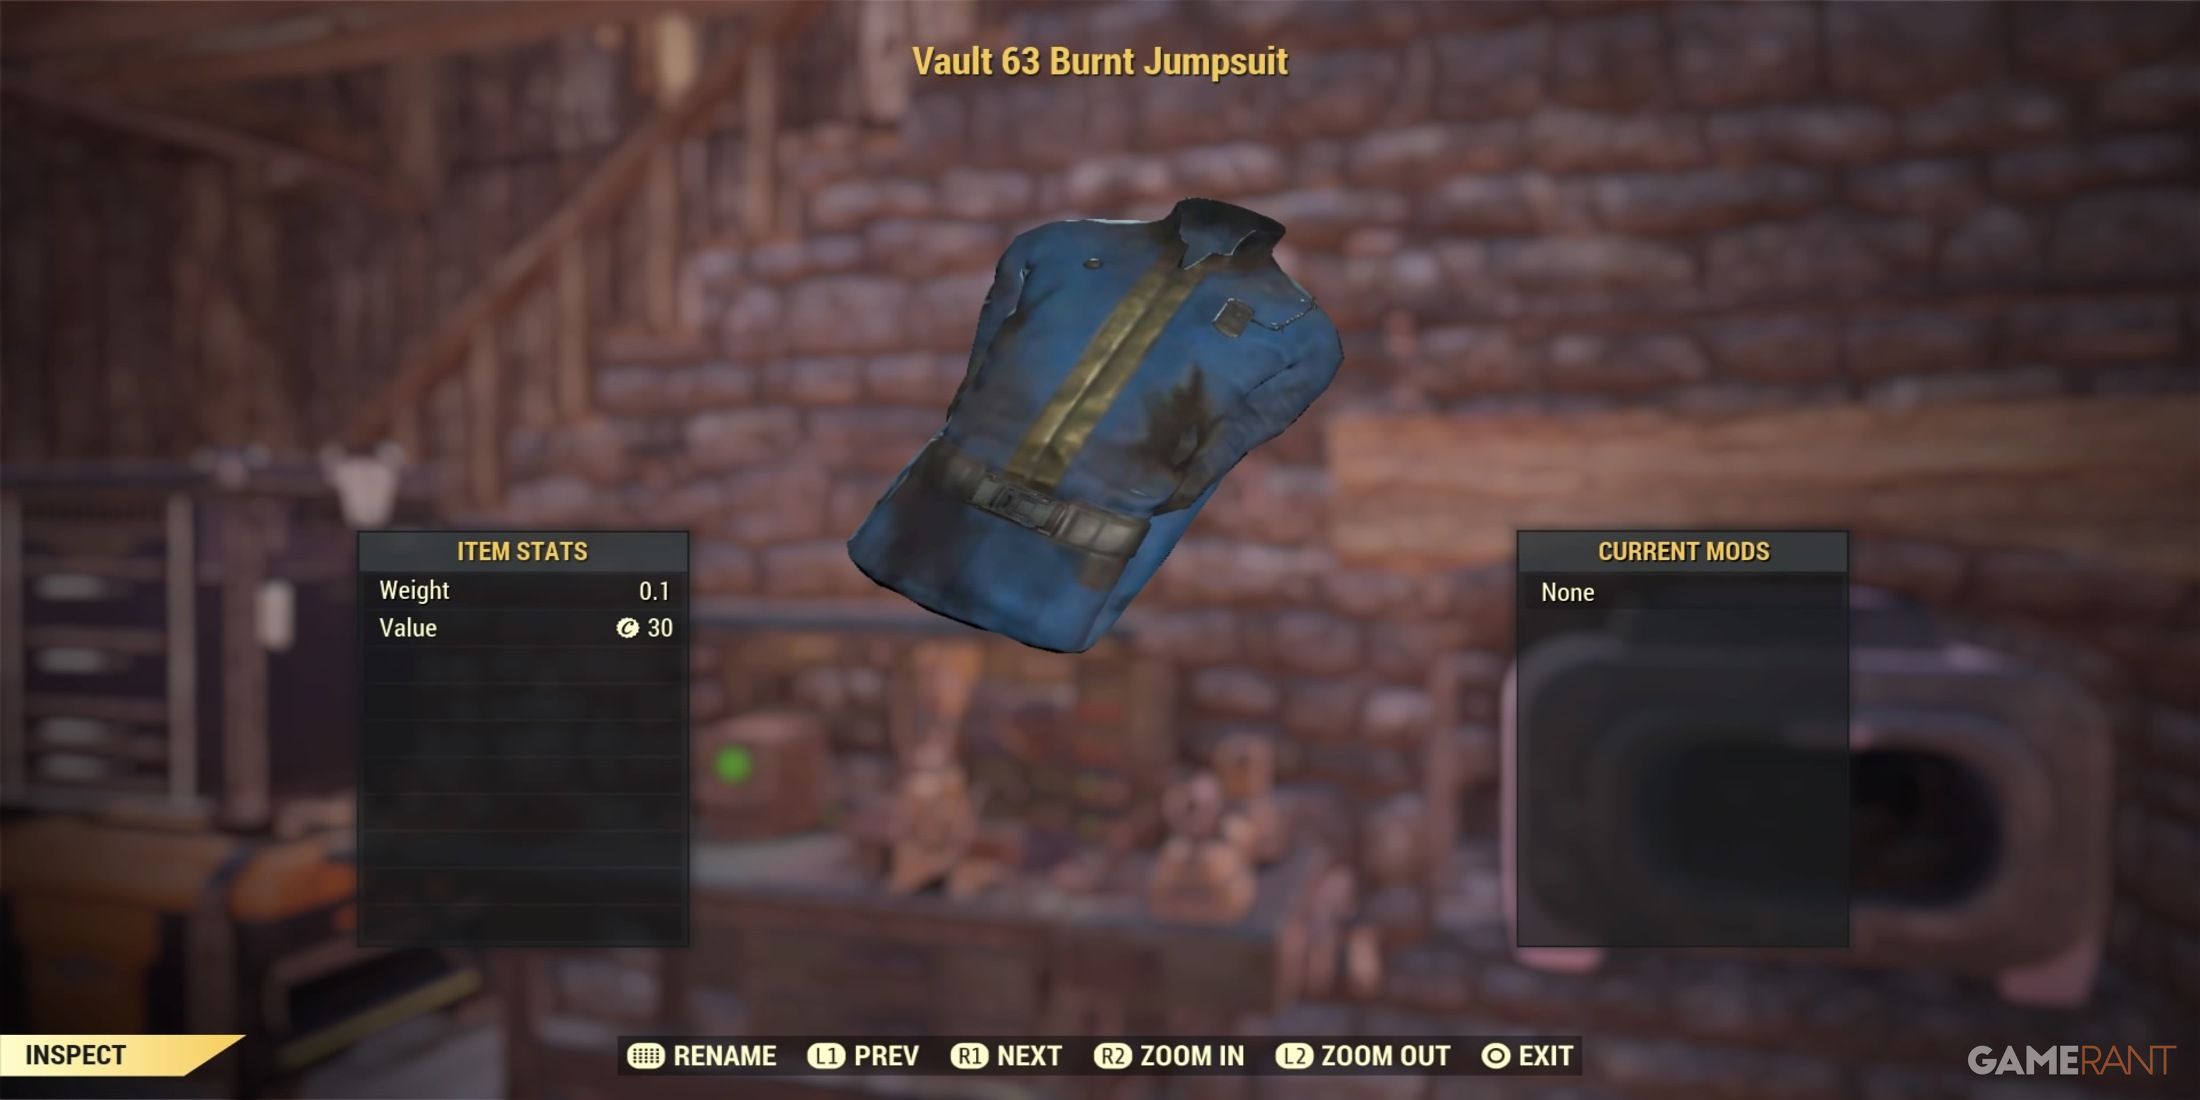 Vault 63 Burnt Jumpsuit in Fallout 76